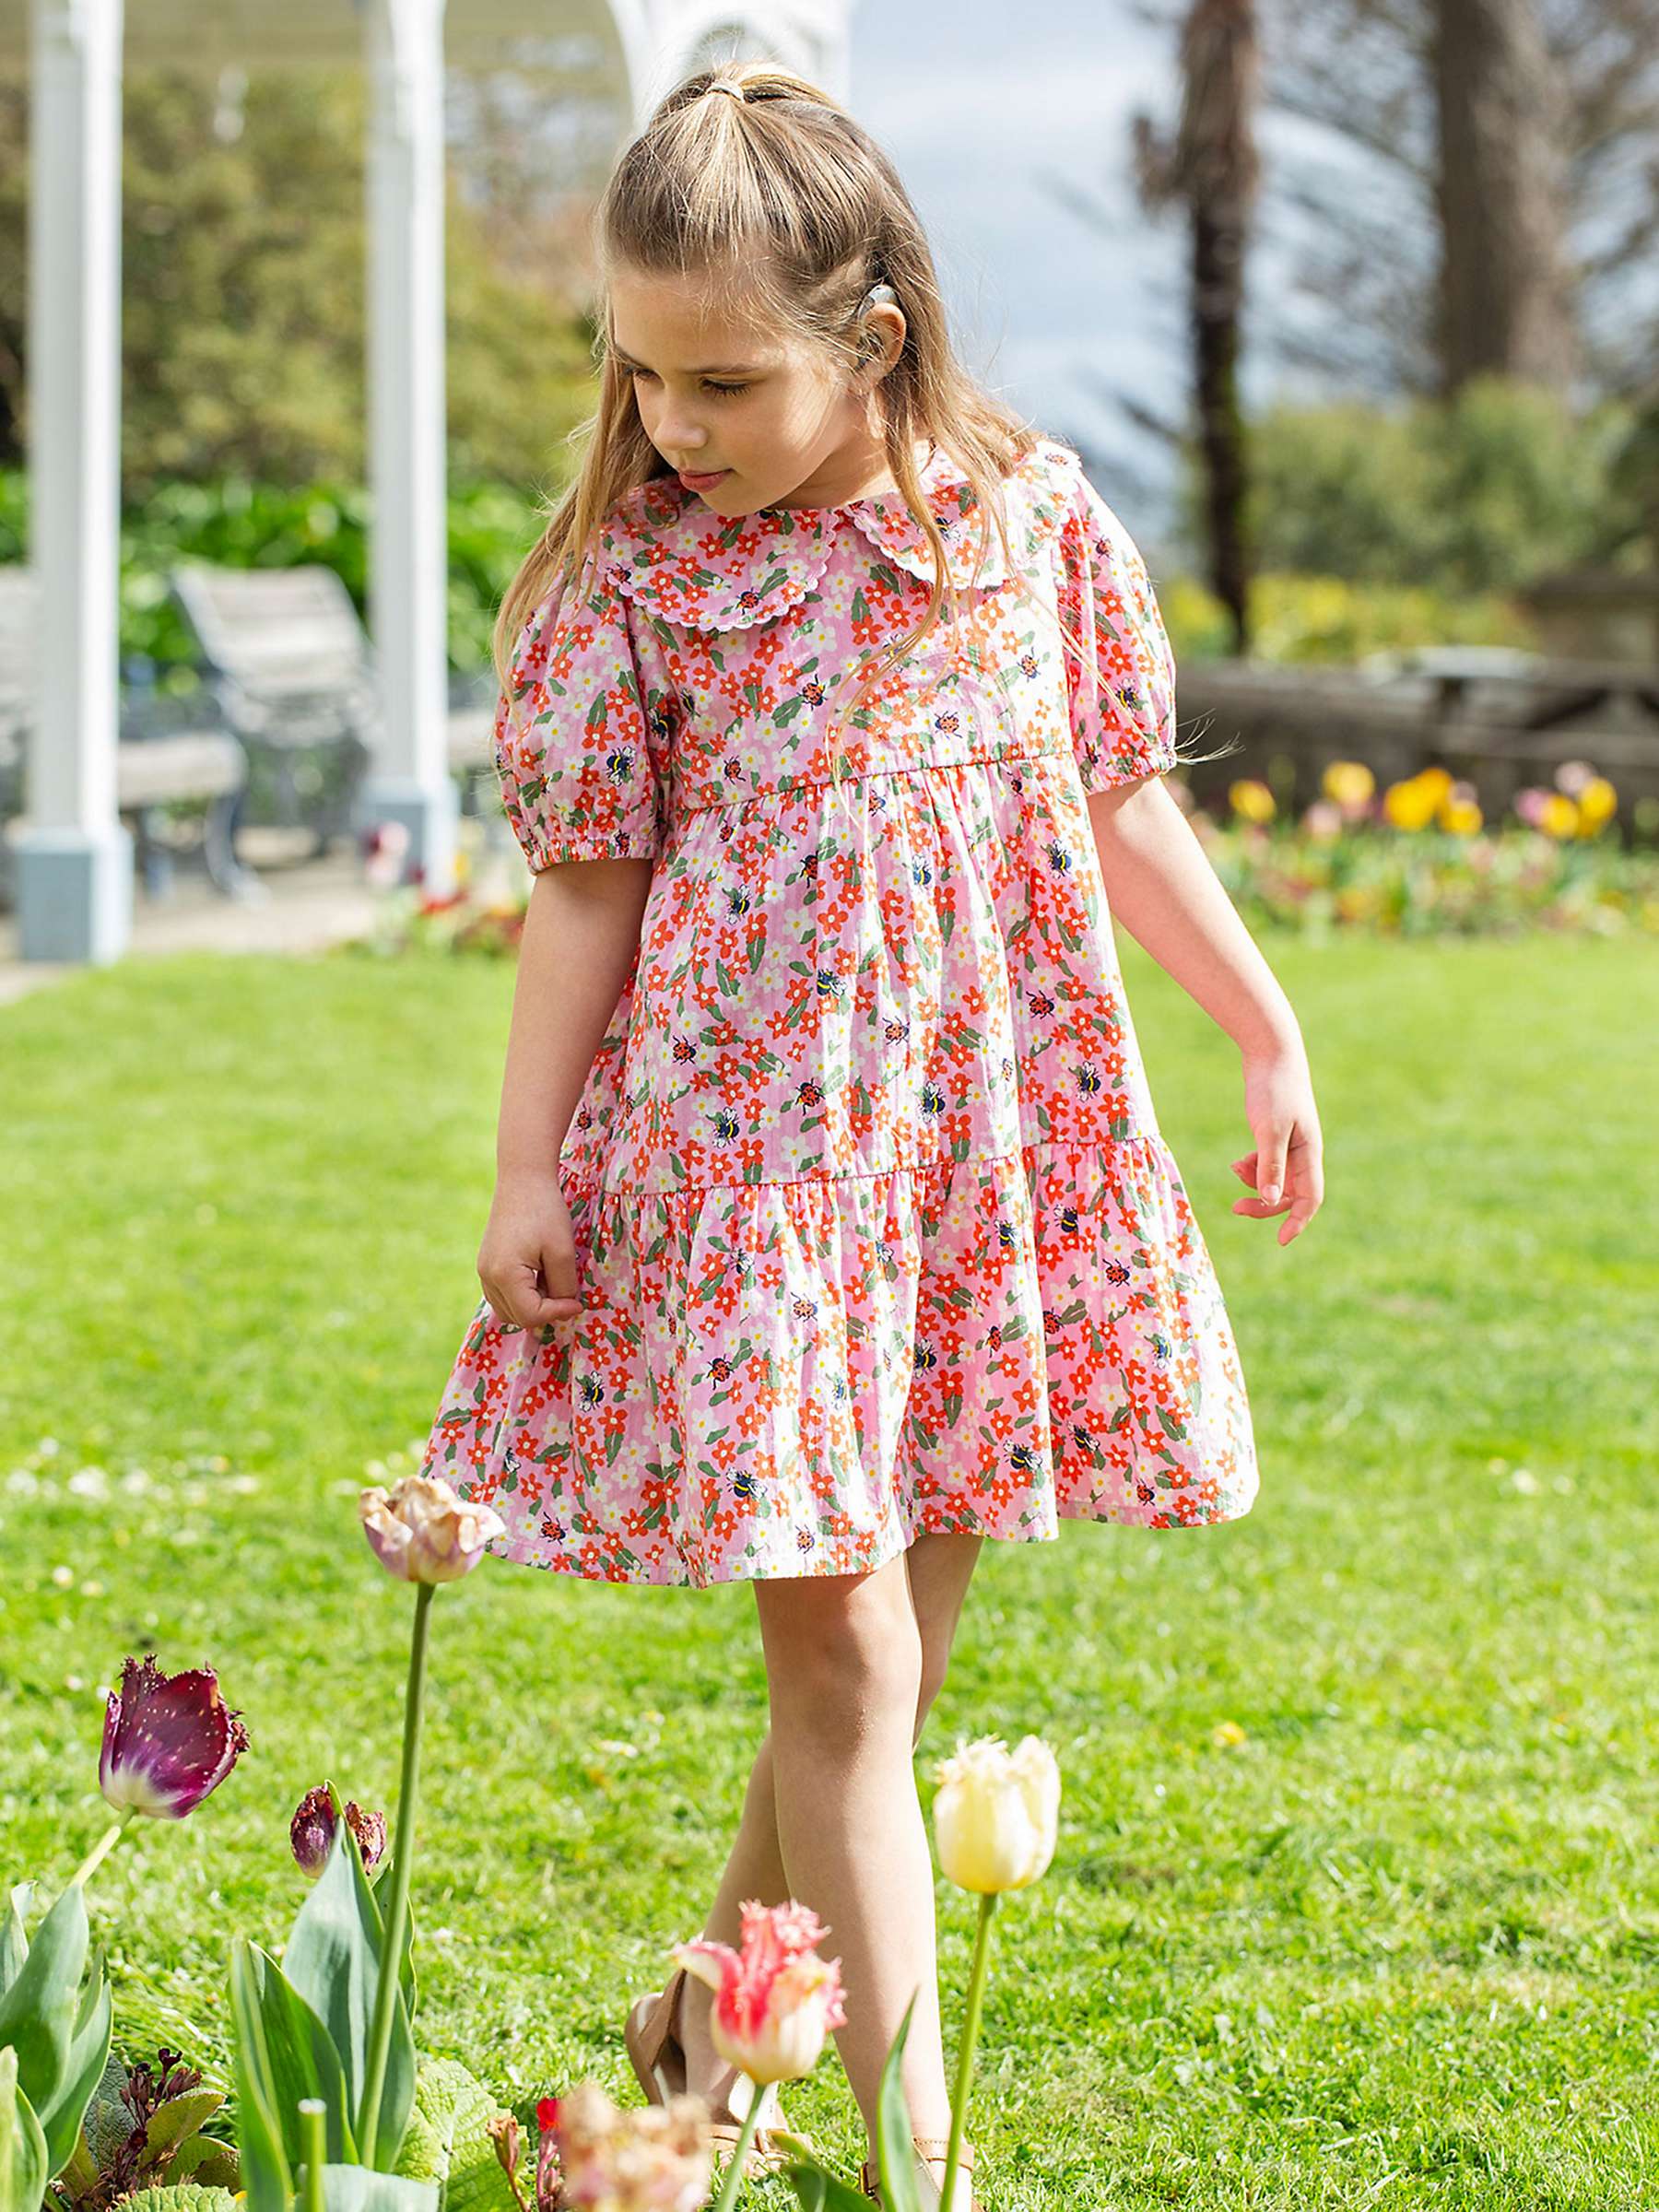 Buy Frugi Kids' Matilda Organic Cotton Floral Fun Collared Tiered Dress, Pink Online at johnlewis.com